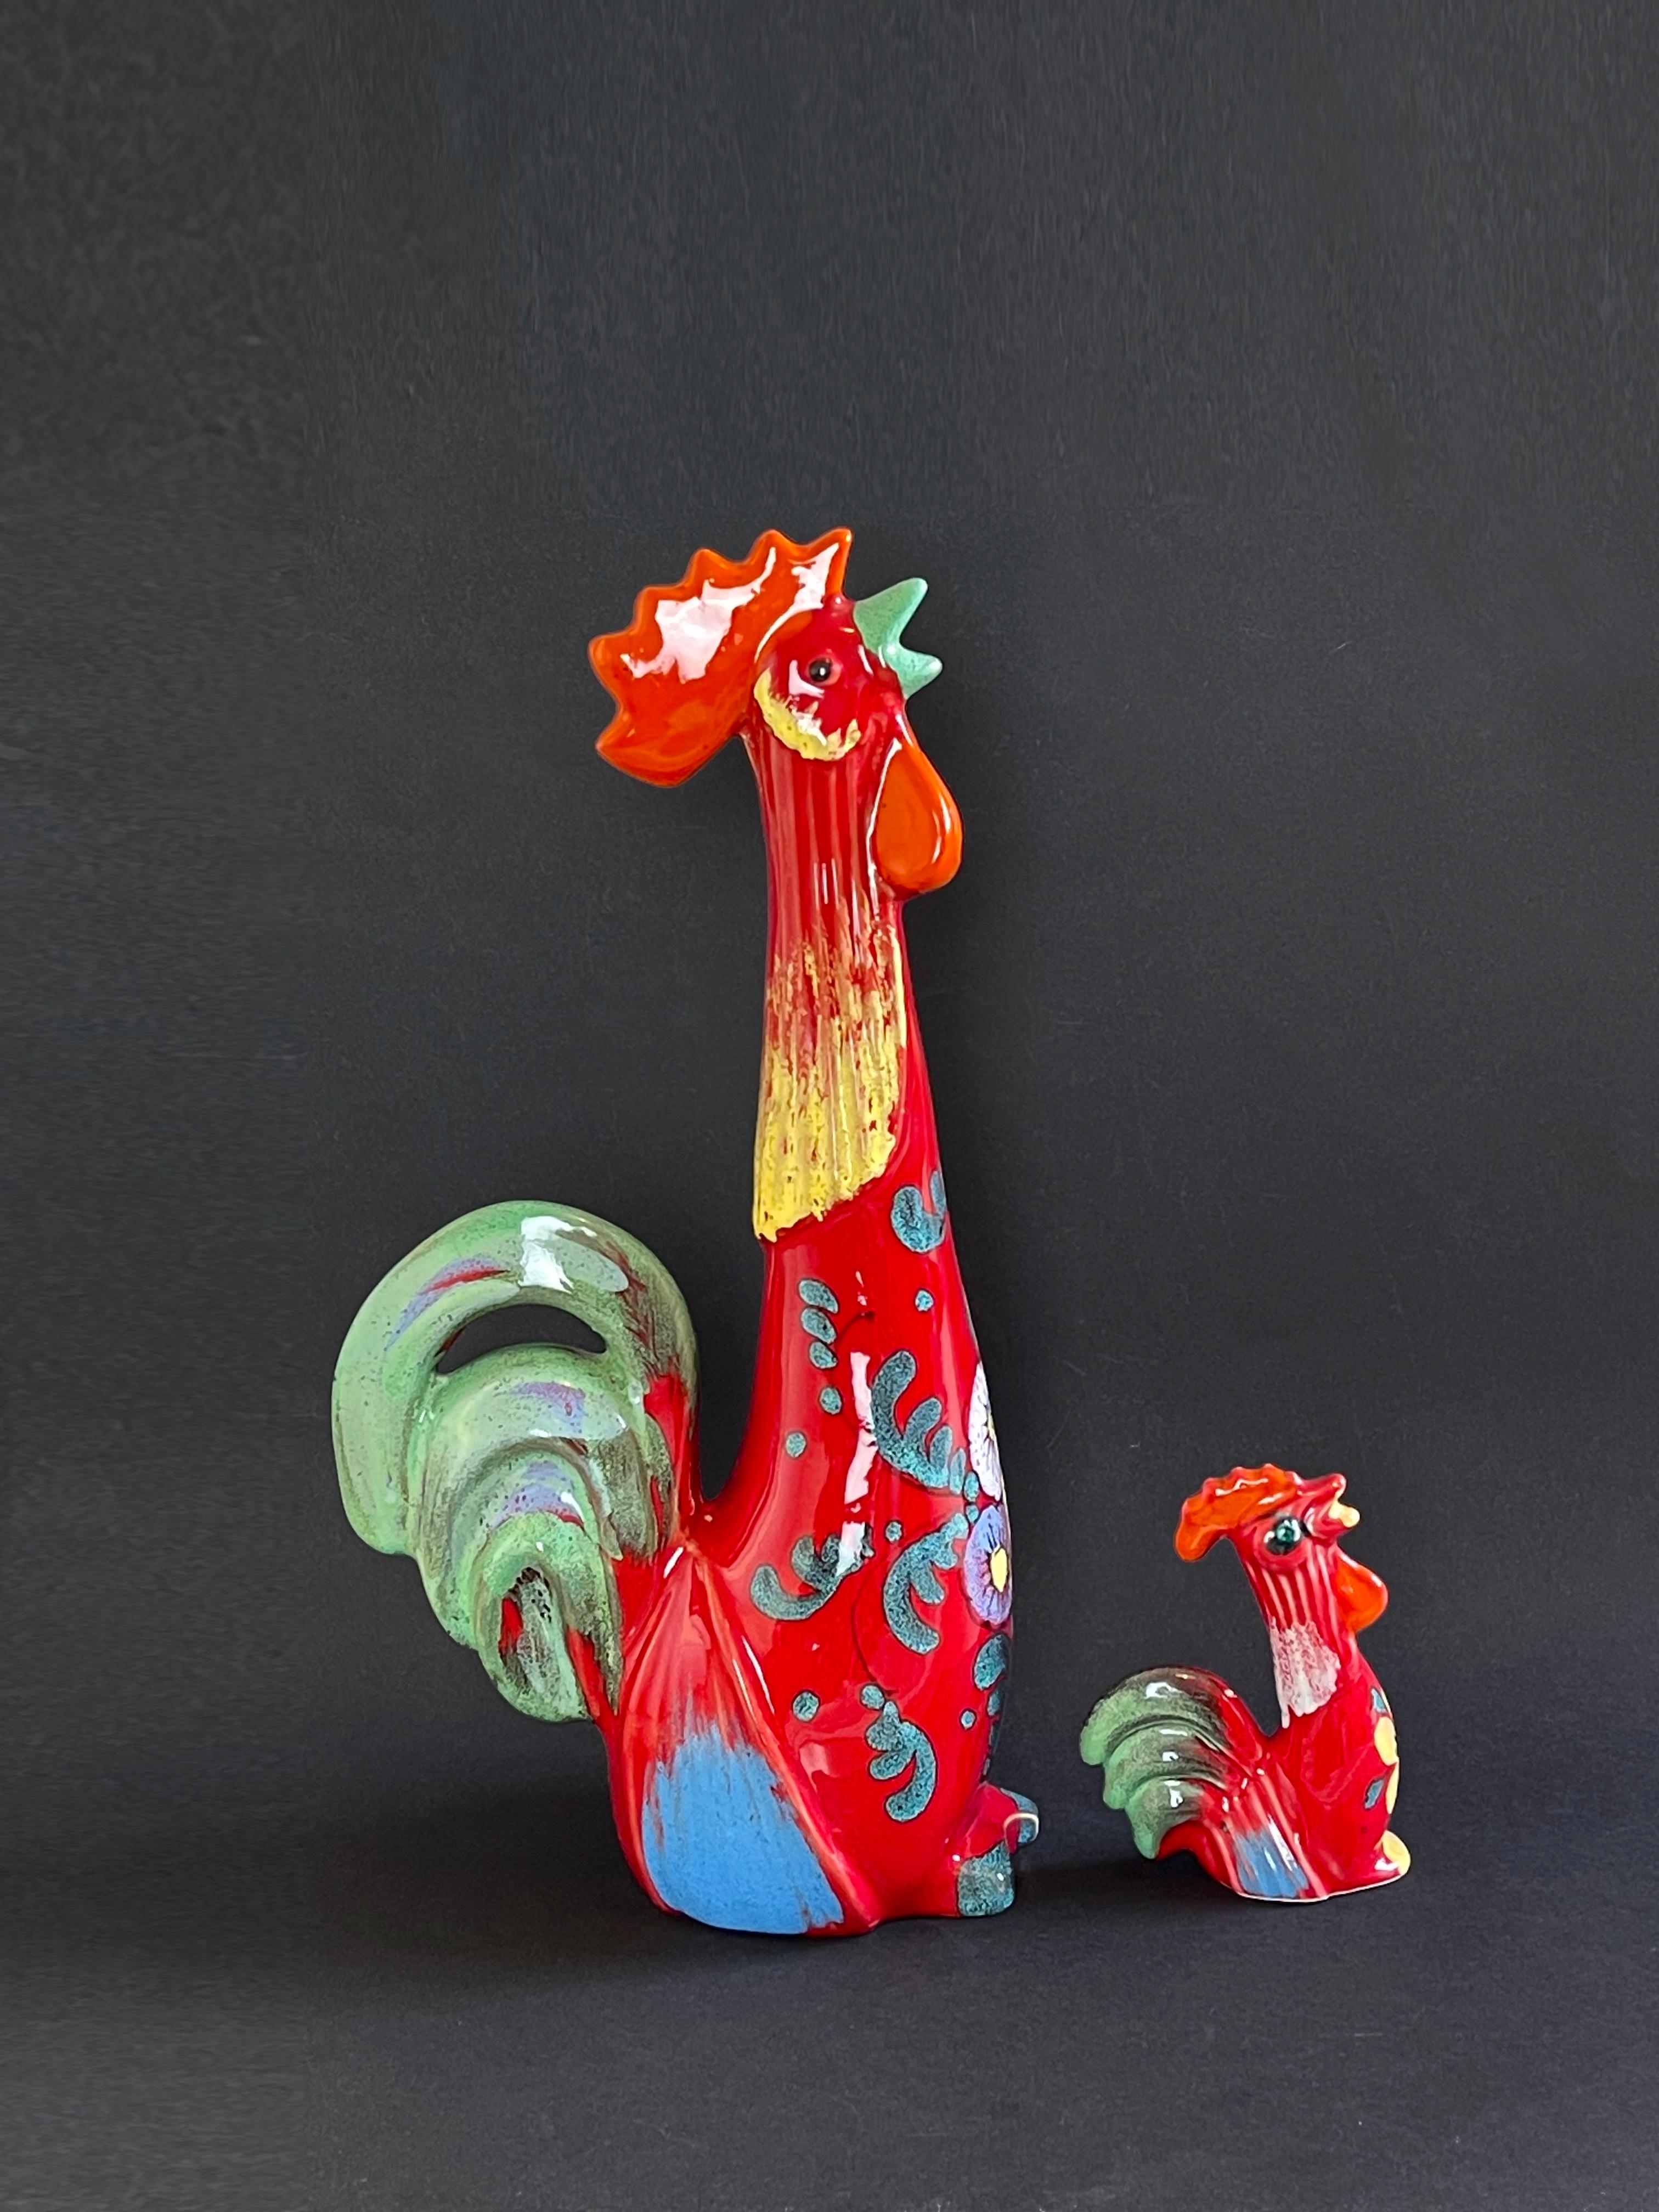 Funky Fat Lava-Stil Paar Hähne in einem feurigen Rot: Keramikfiguren aus der Mitte des Jahrhunderts.
Sehr farbenfrohe Spaßglasur in der typischen Farbpalette der Jahrhundertmitte.
Aus leichter Keramik, wunderschön geformte, längliche und stilisierte